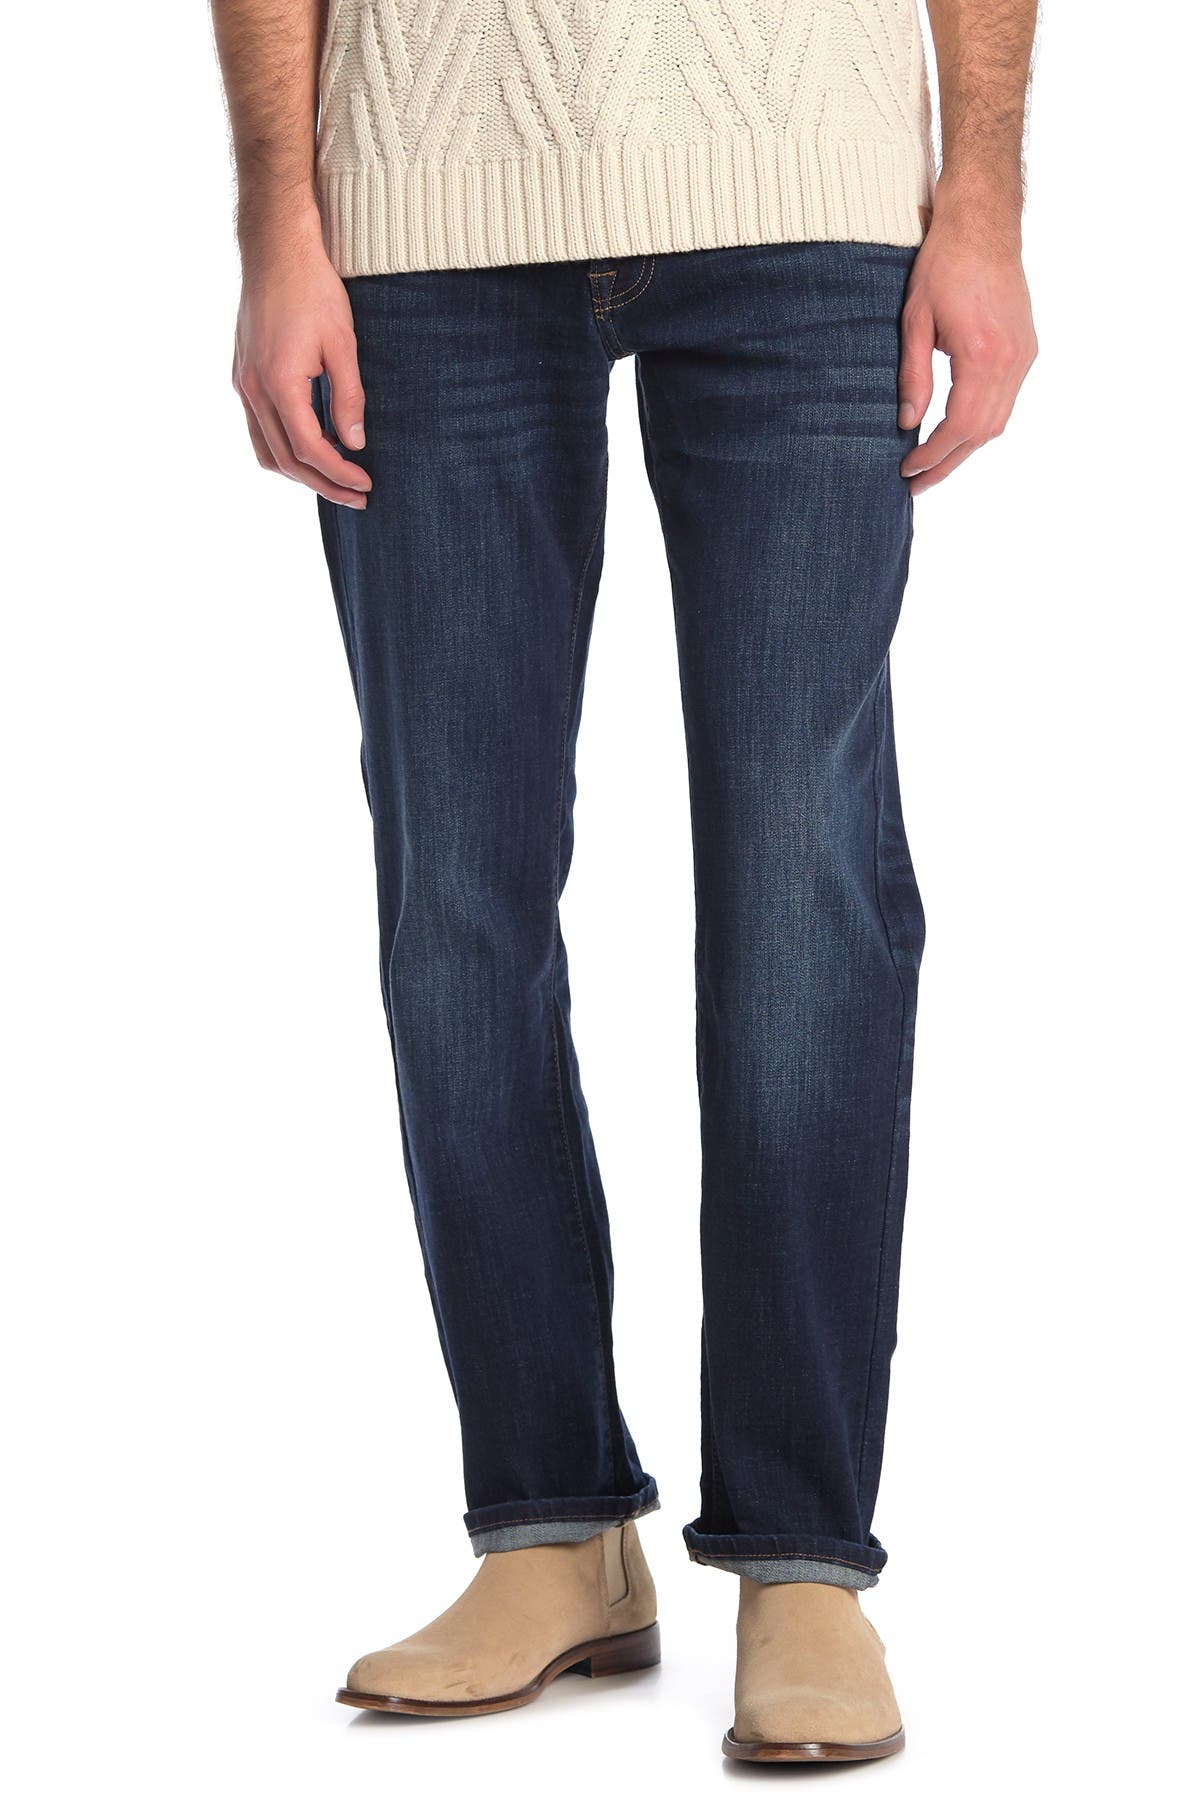 nordstrom rack lucky brand jeans